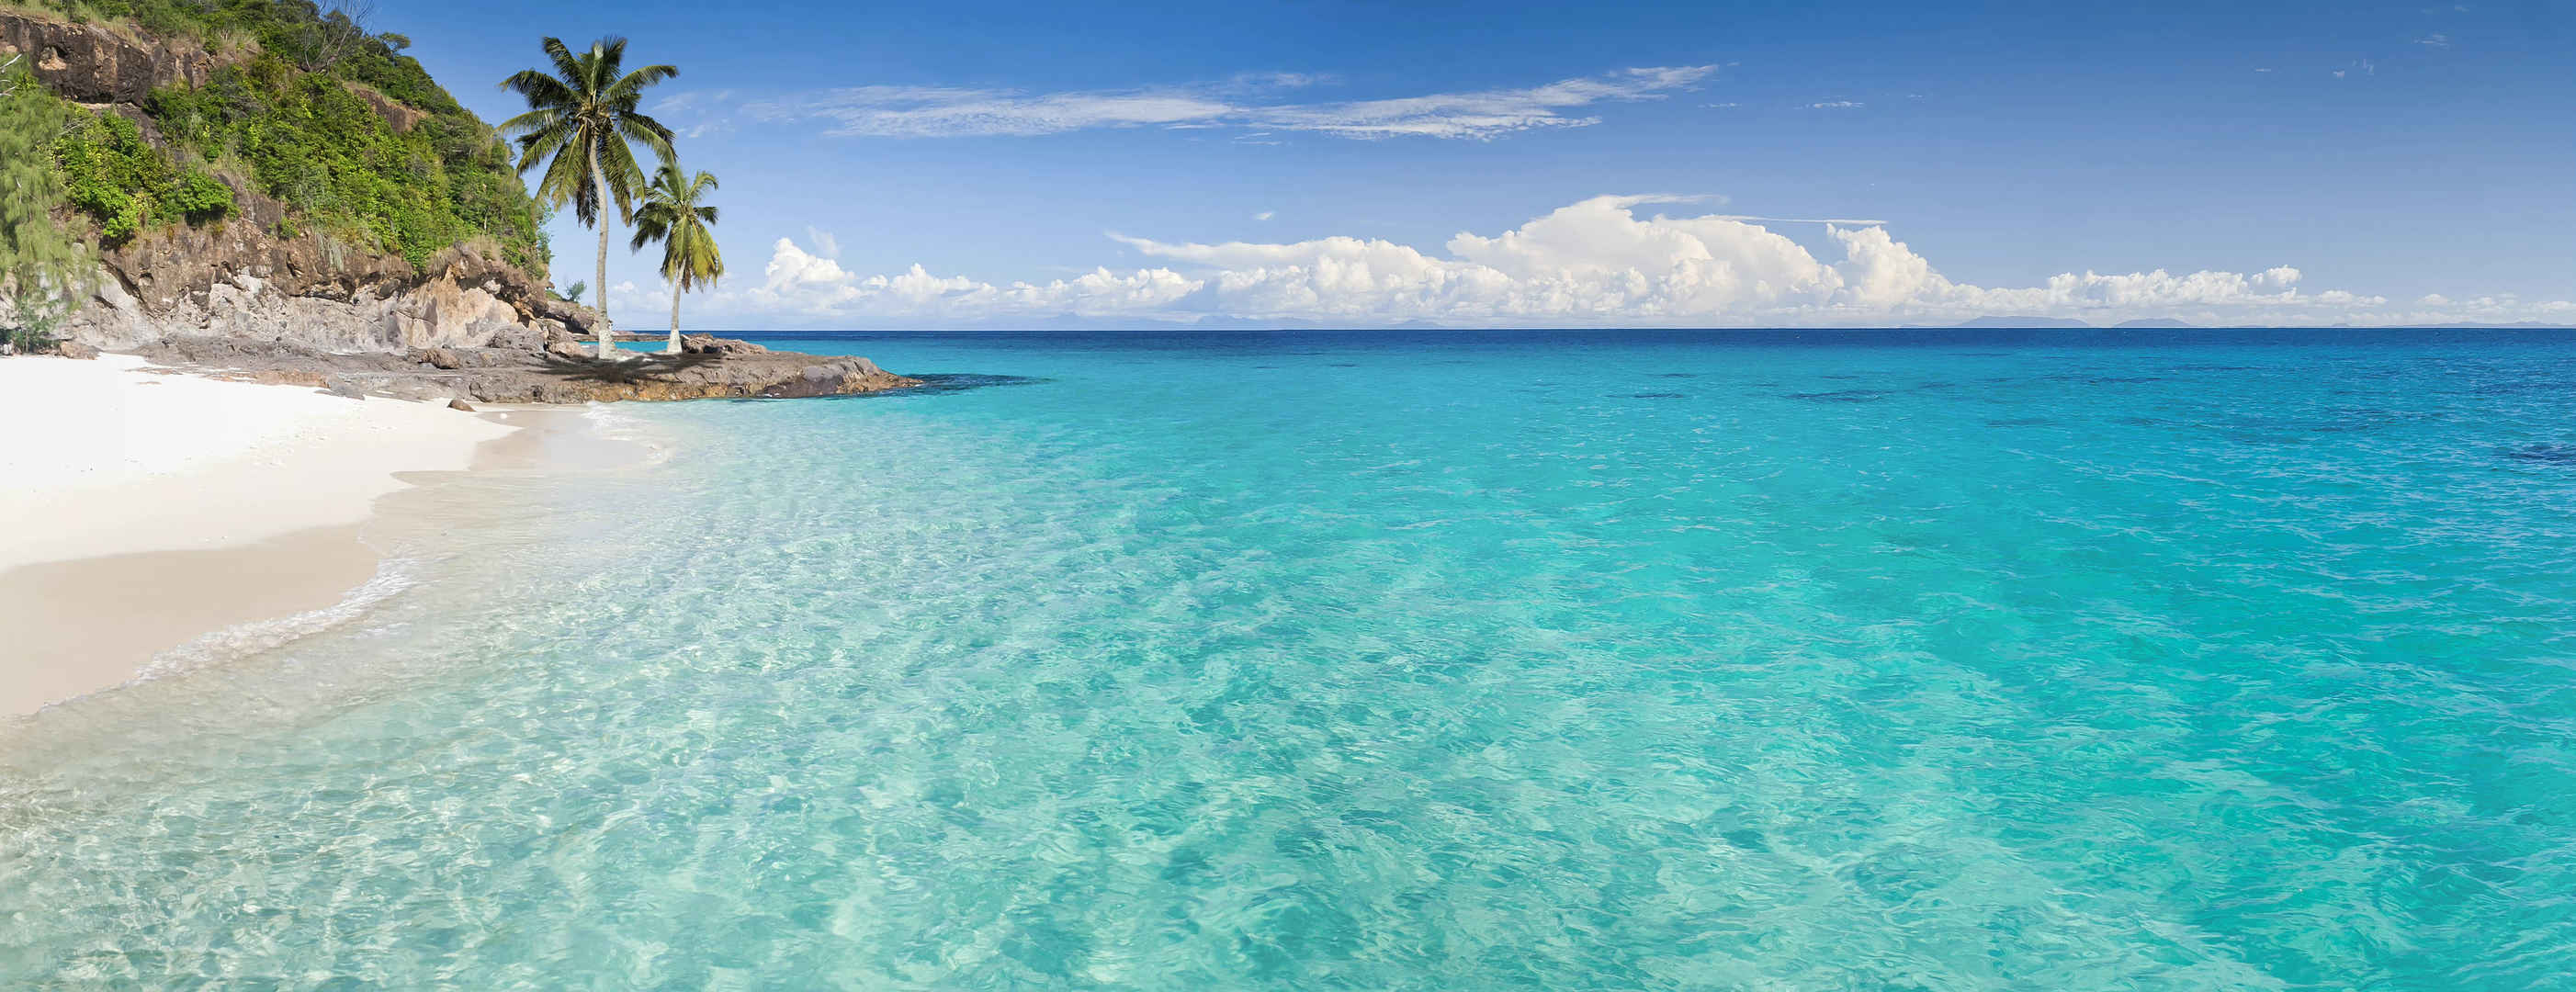 大海岛屿透明海水风景图